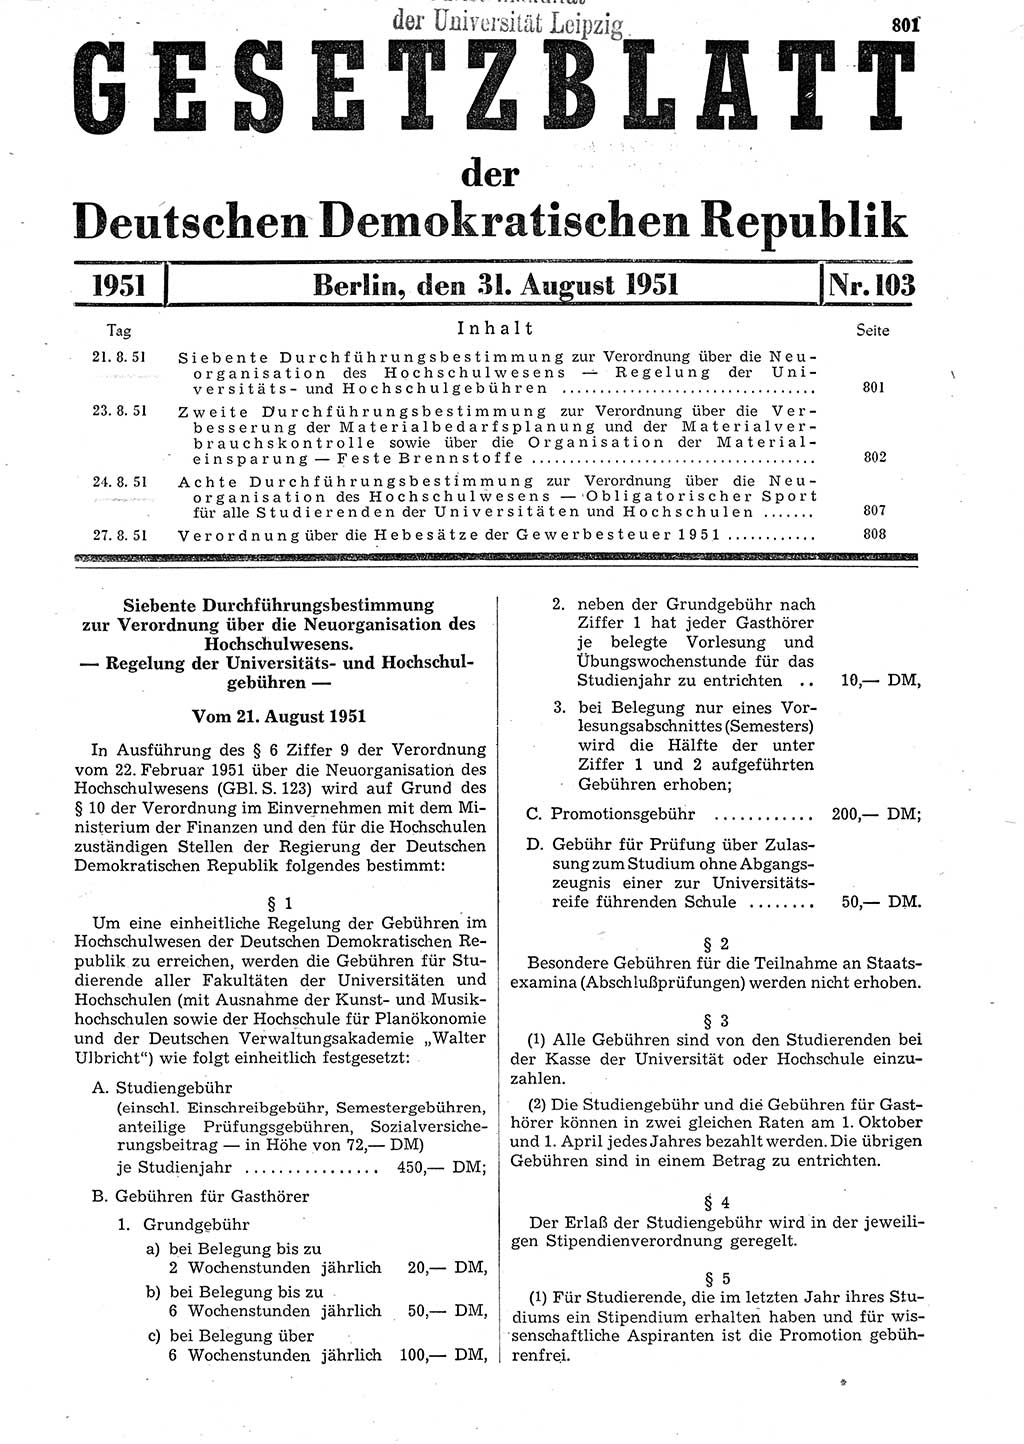 Gesetzblatt (GBl.) der Deutschen Demokratischen Republik (DDR) 1951, Seite 801 (GBl. DDR 1951, S. 801)